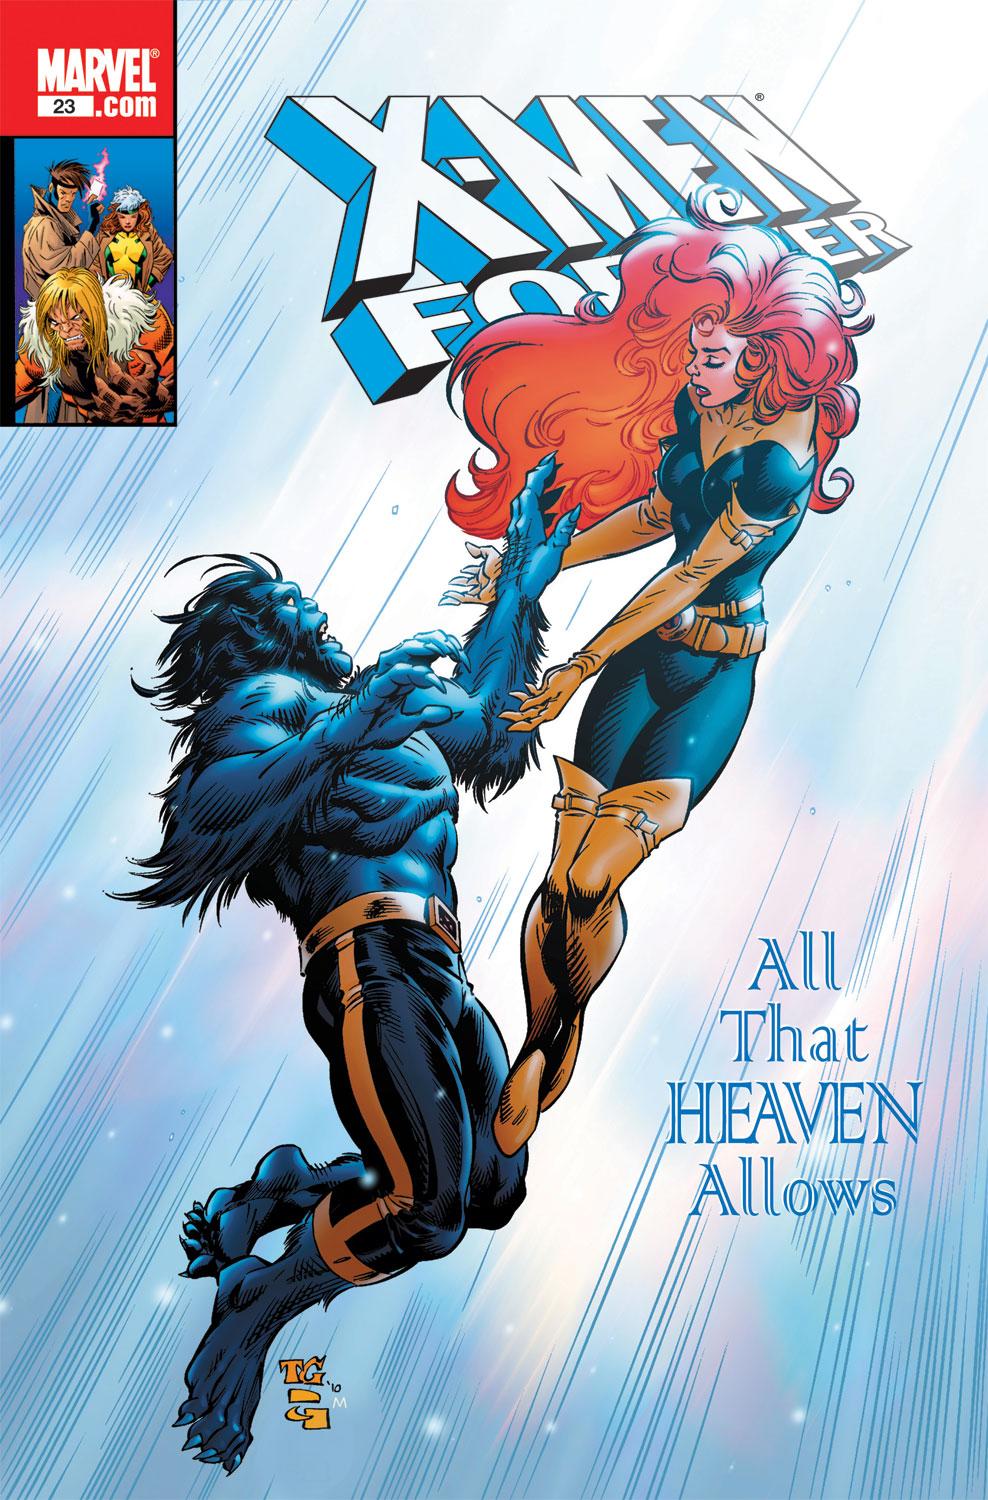 X-Men Forever (2009) #23